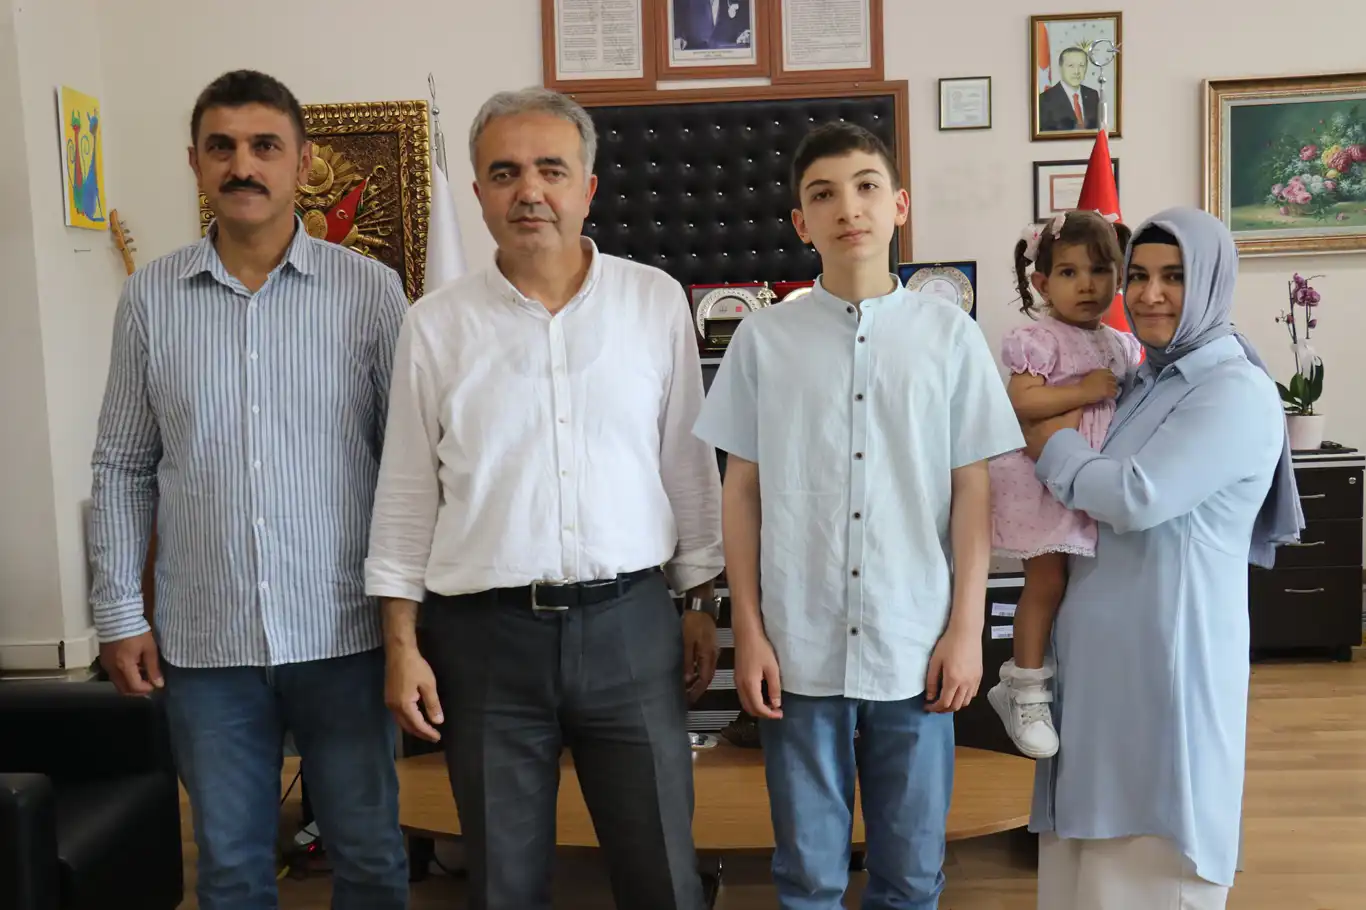 İmam hatip öğrencisi Özkan, hocalarının desteğiyle Türkiye birincisi oldu